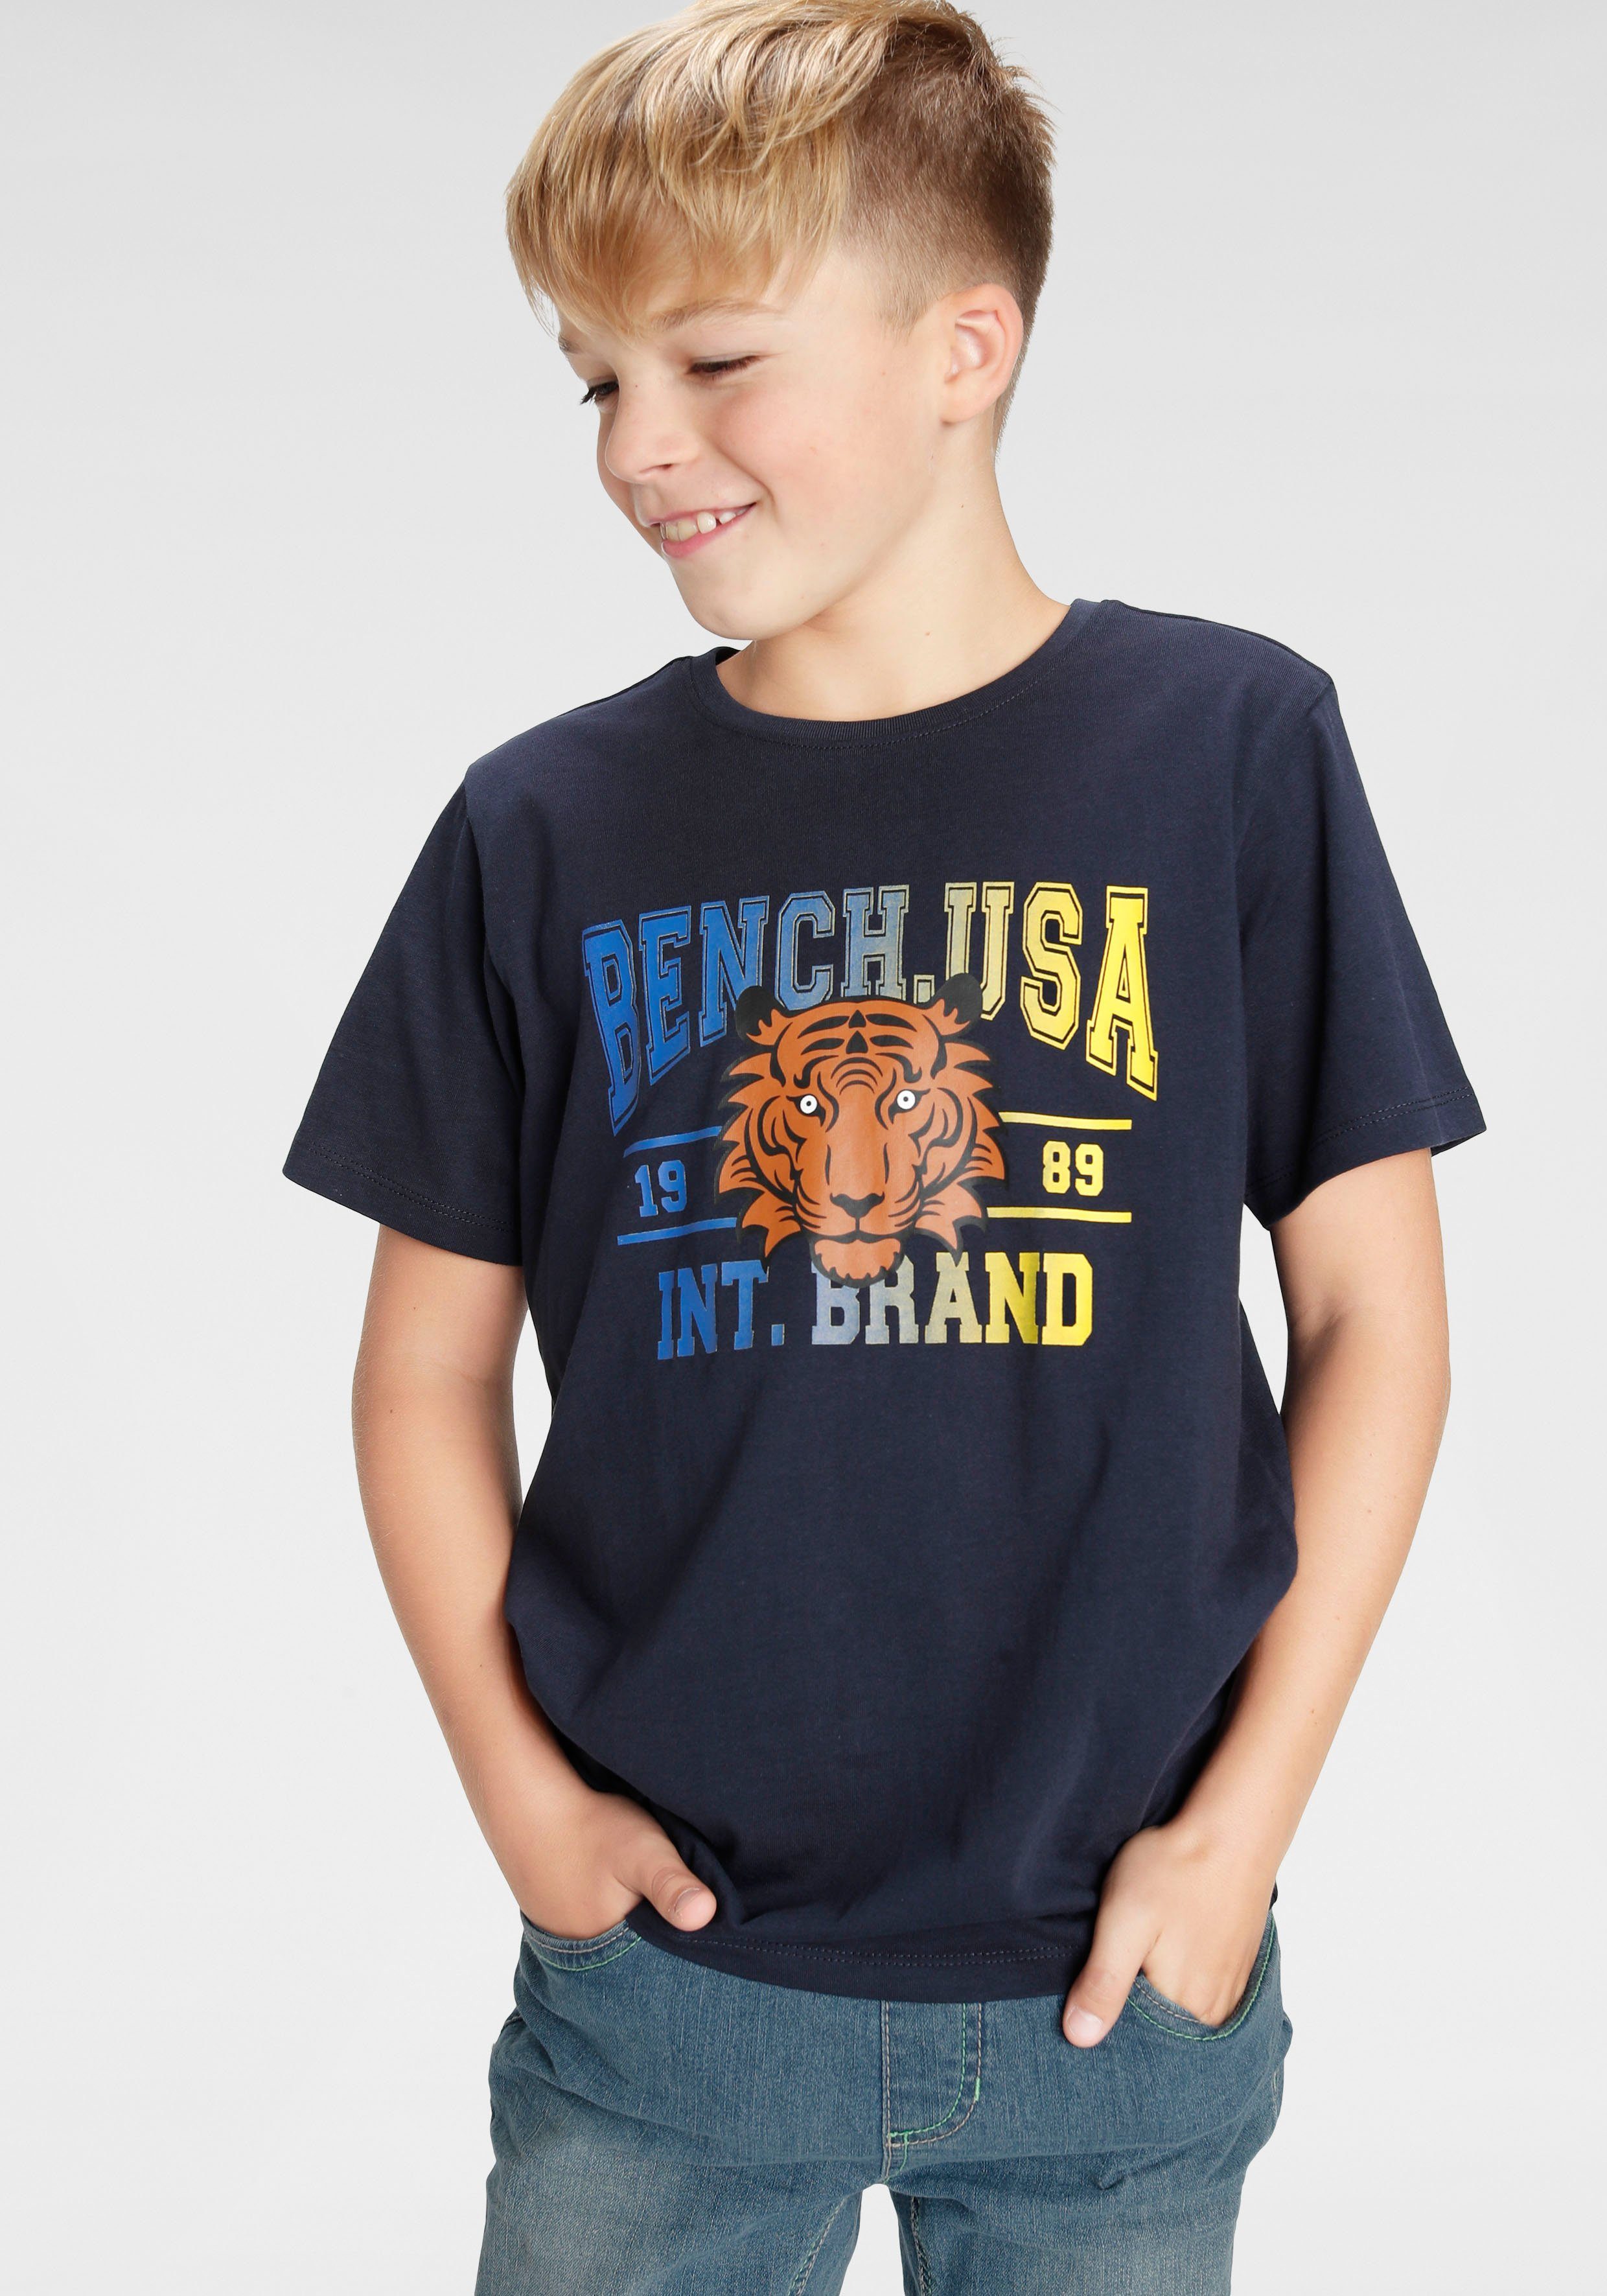 Top-Verkaufsförderung Tiger Bench. T-Shirt